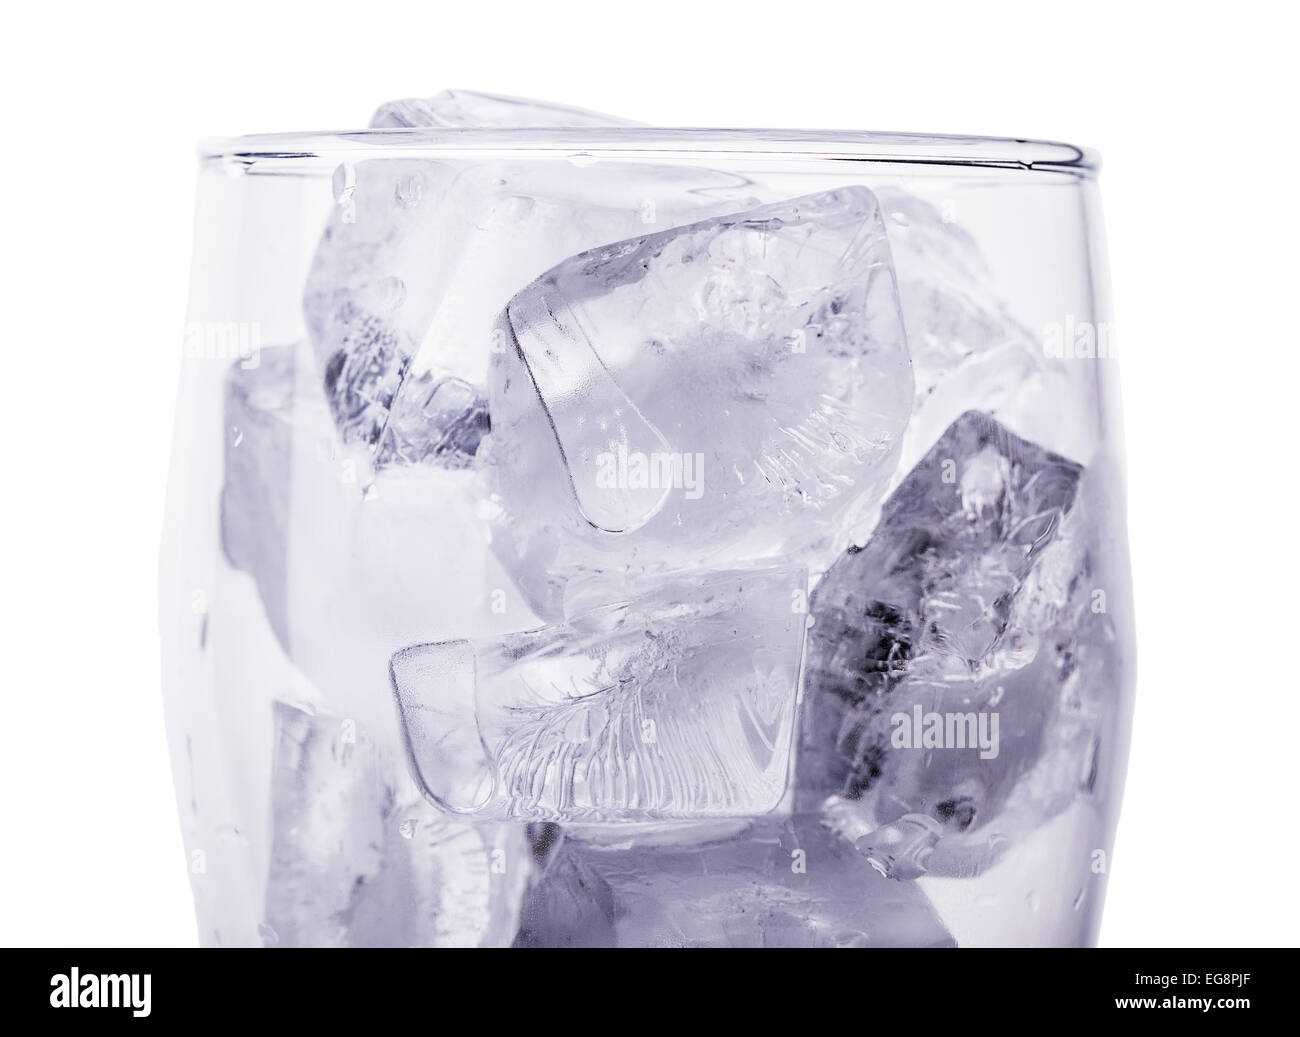 https://c8.alamy.com/comp/EG8PJF/ice-glass-water-isolated-white-drink-cubes-EG8PJF.jpg